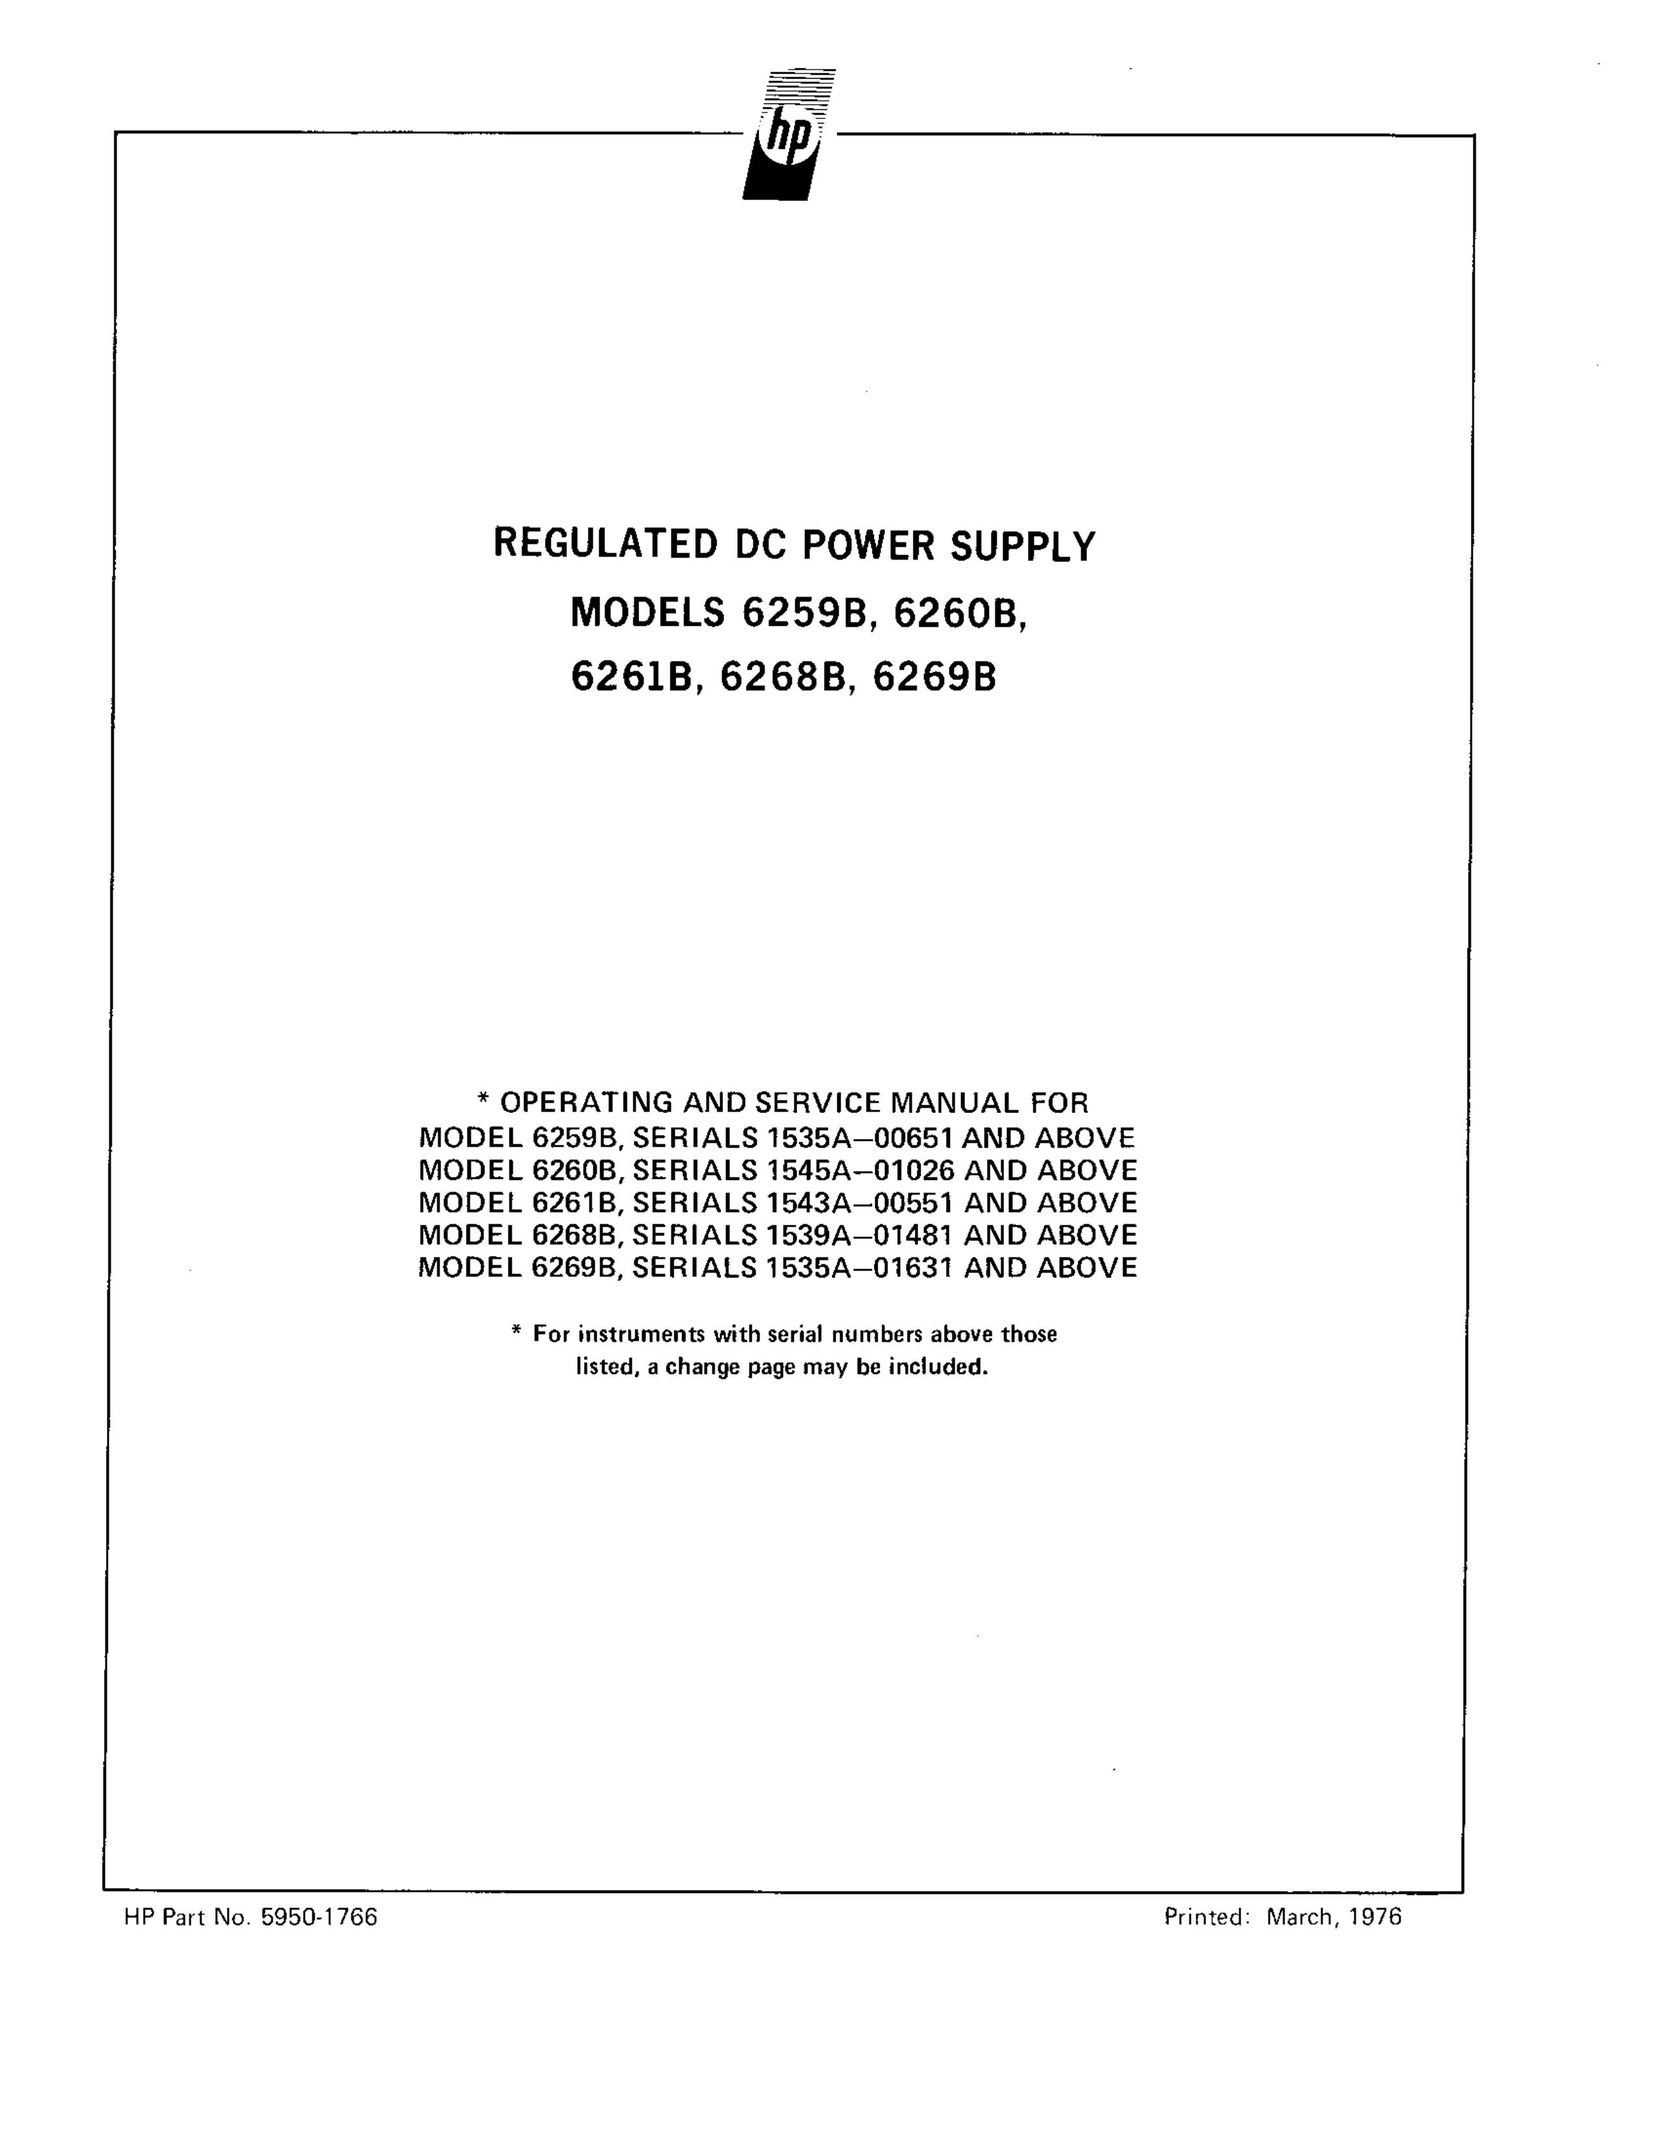 HP (Hewlett-Packard) 6259B Power Supply User Manual